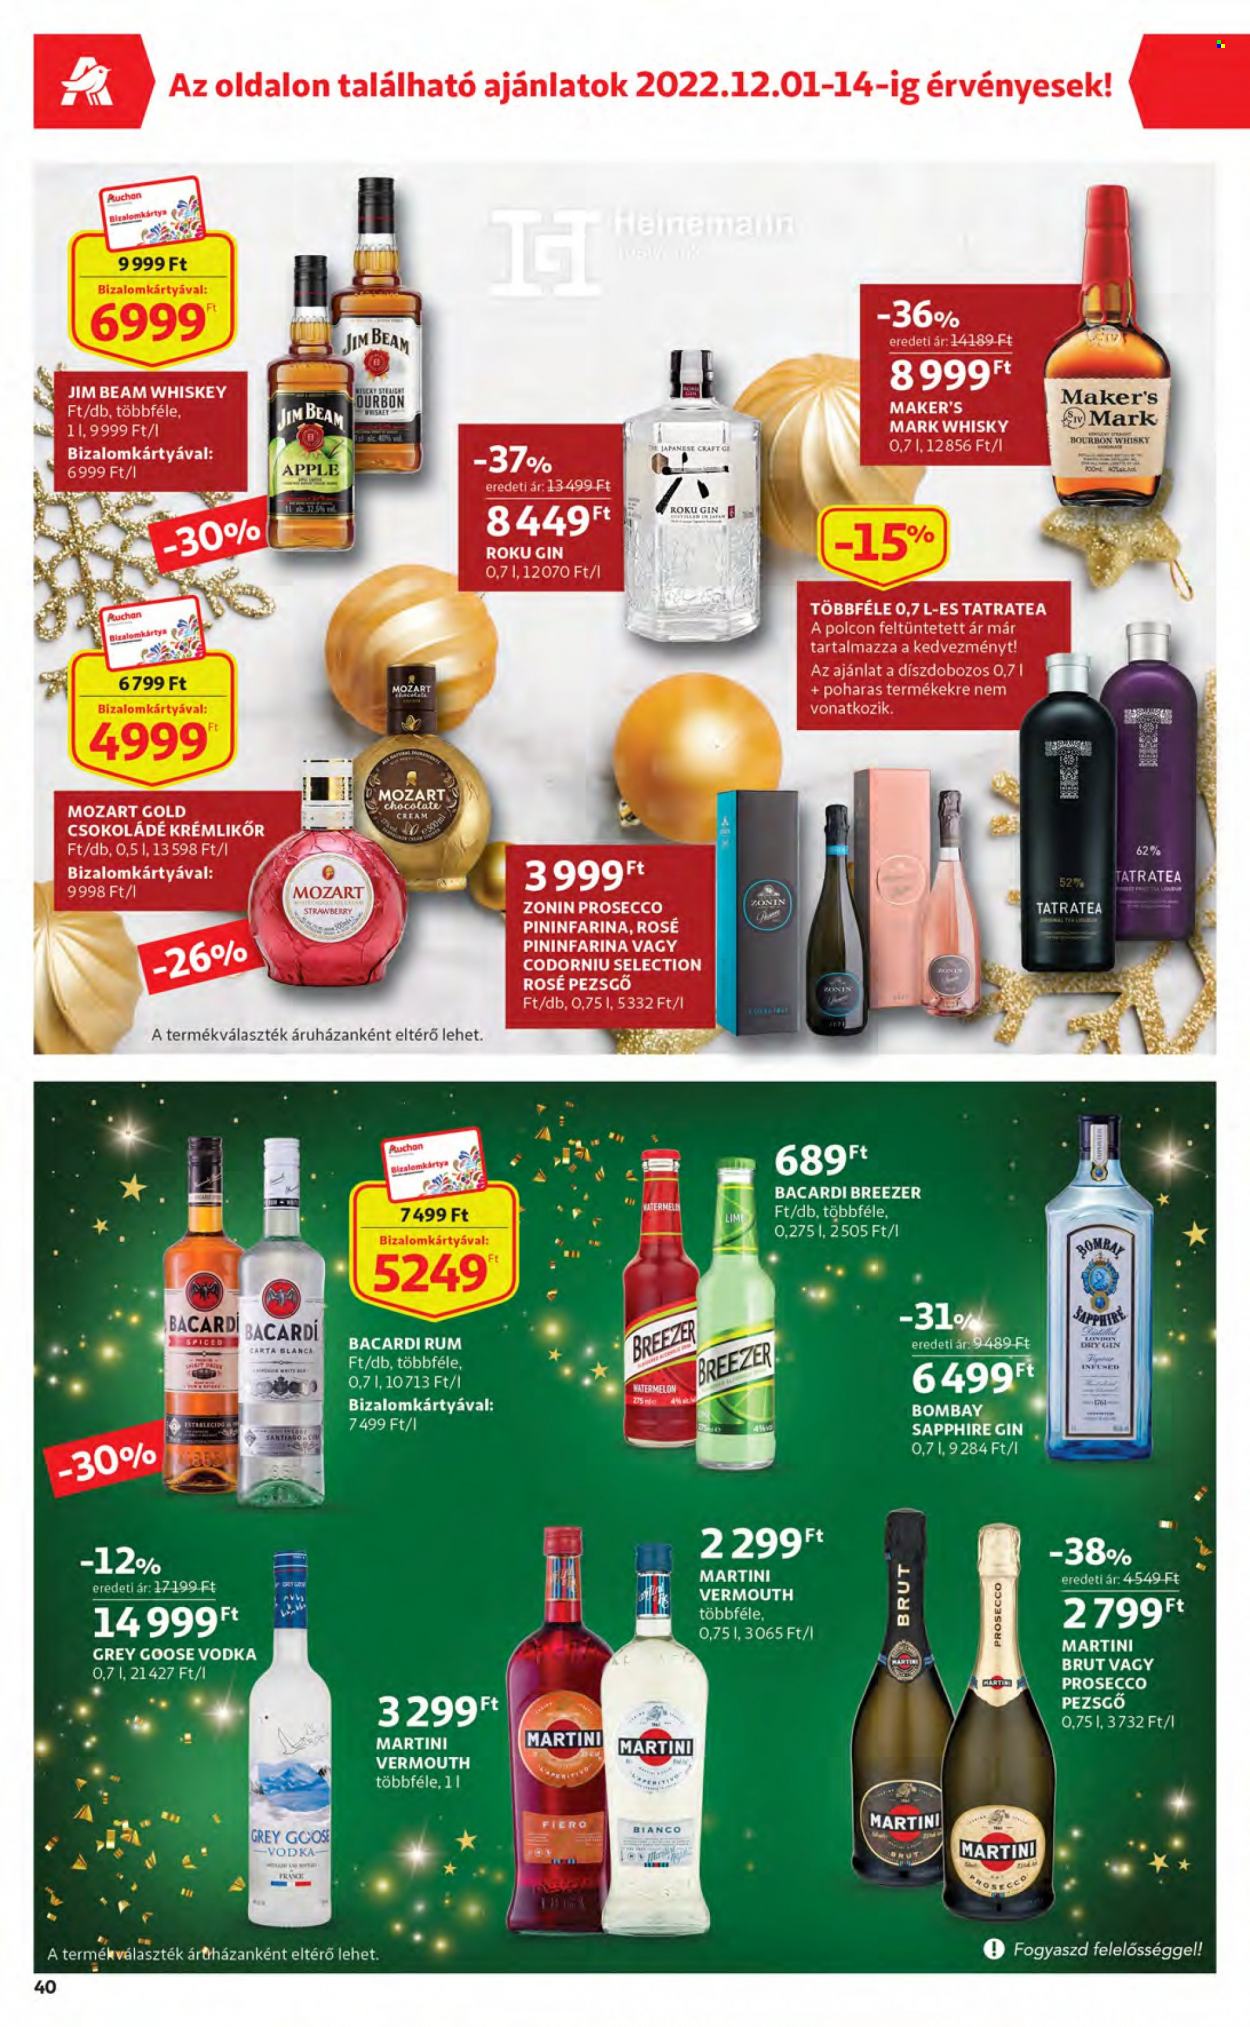 thumbnail - Auchan akciós újsága  - 2022.12.01 - 2022.12.07 - Akciós termékek - Craft, csokoládé, pezsgő, prosecco, bourbon, gin, Martini, rum, vodka, whisky, Jim Beam, krémlikőr.  40. Oldal